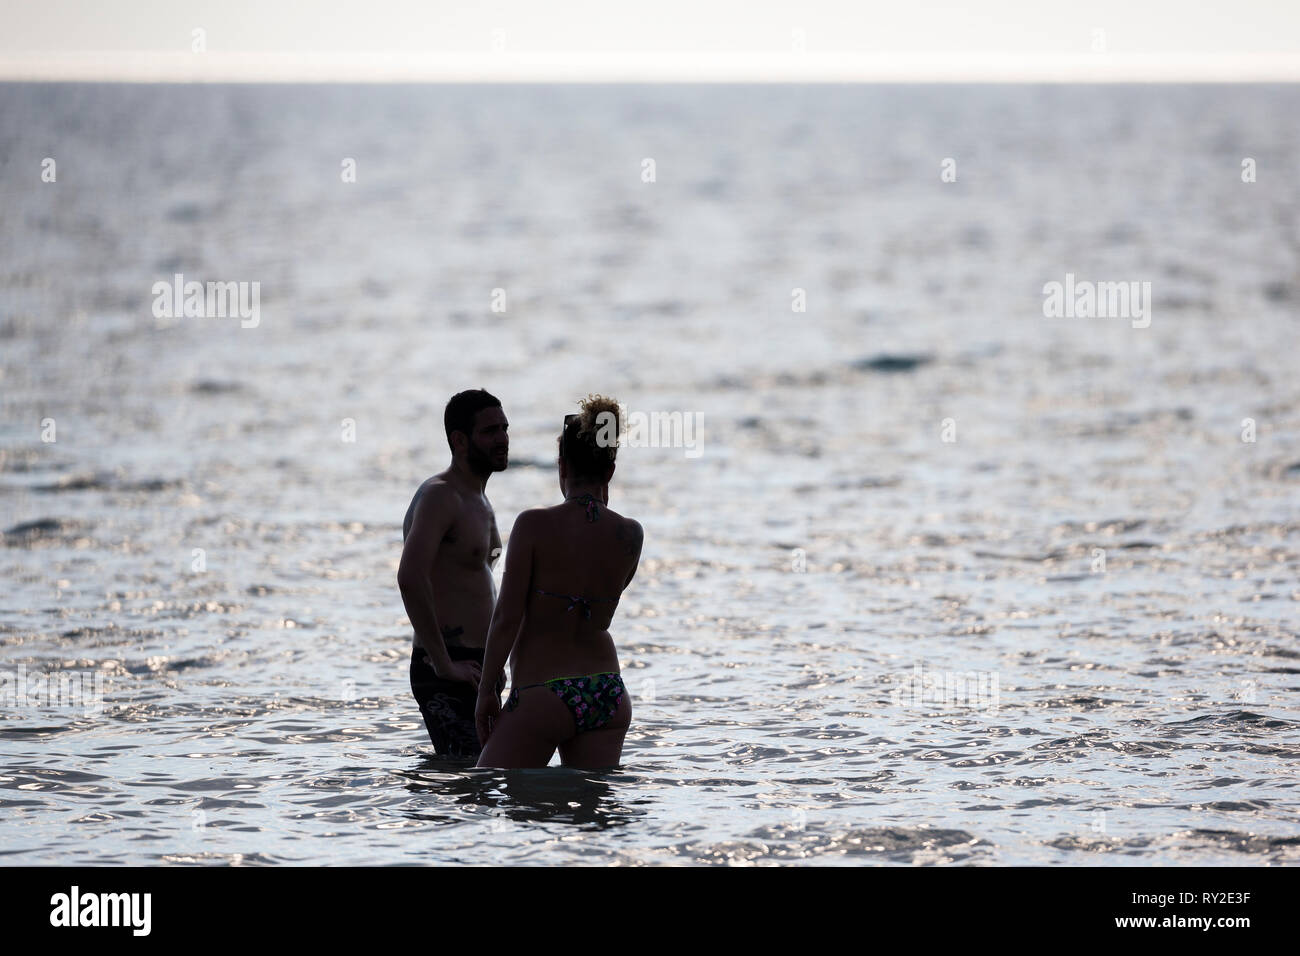 Ein Paar steht im Wasser am Golf von Mexiko bei THEMENBILD Florida, 06.02.2017 Bildnachweis: Mario Hommes / Fotografía HH Foto de stock